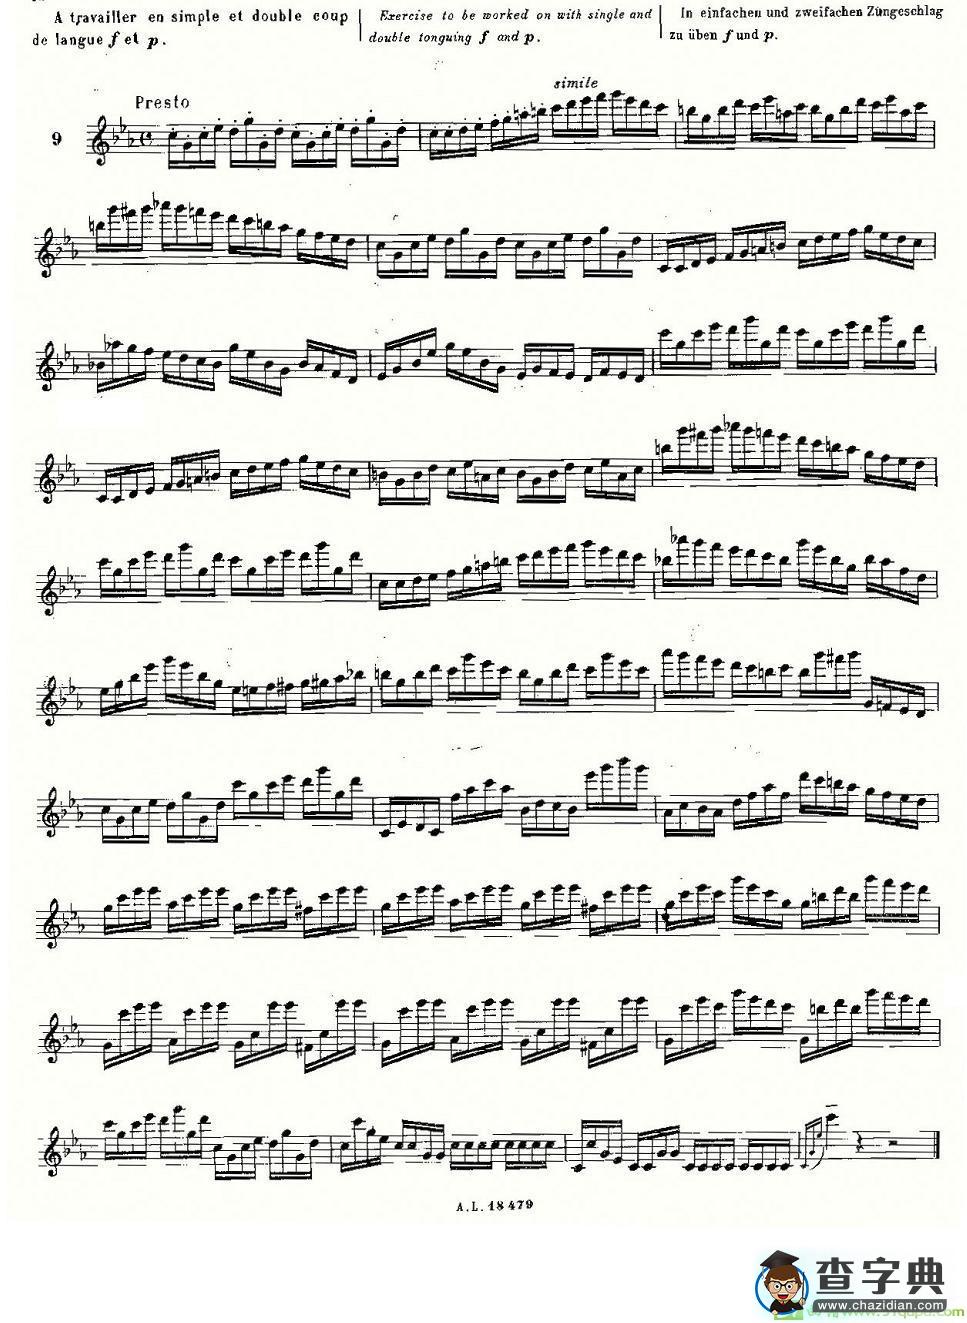 基于维尼亚夫斯基练习曲的10首长笛练习曲之9长笛谱(莫伊斯Moyse作曲)